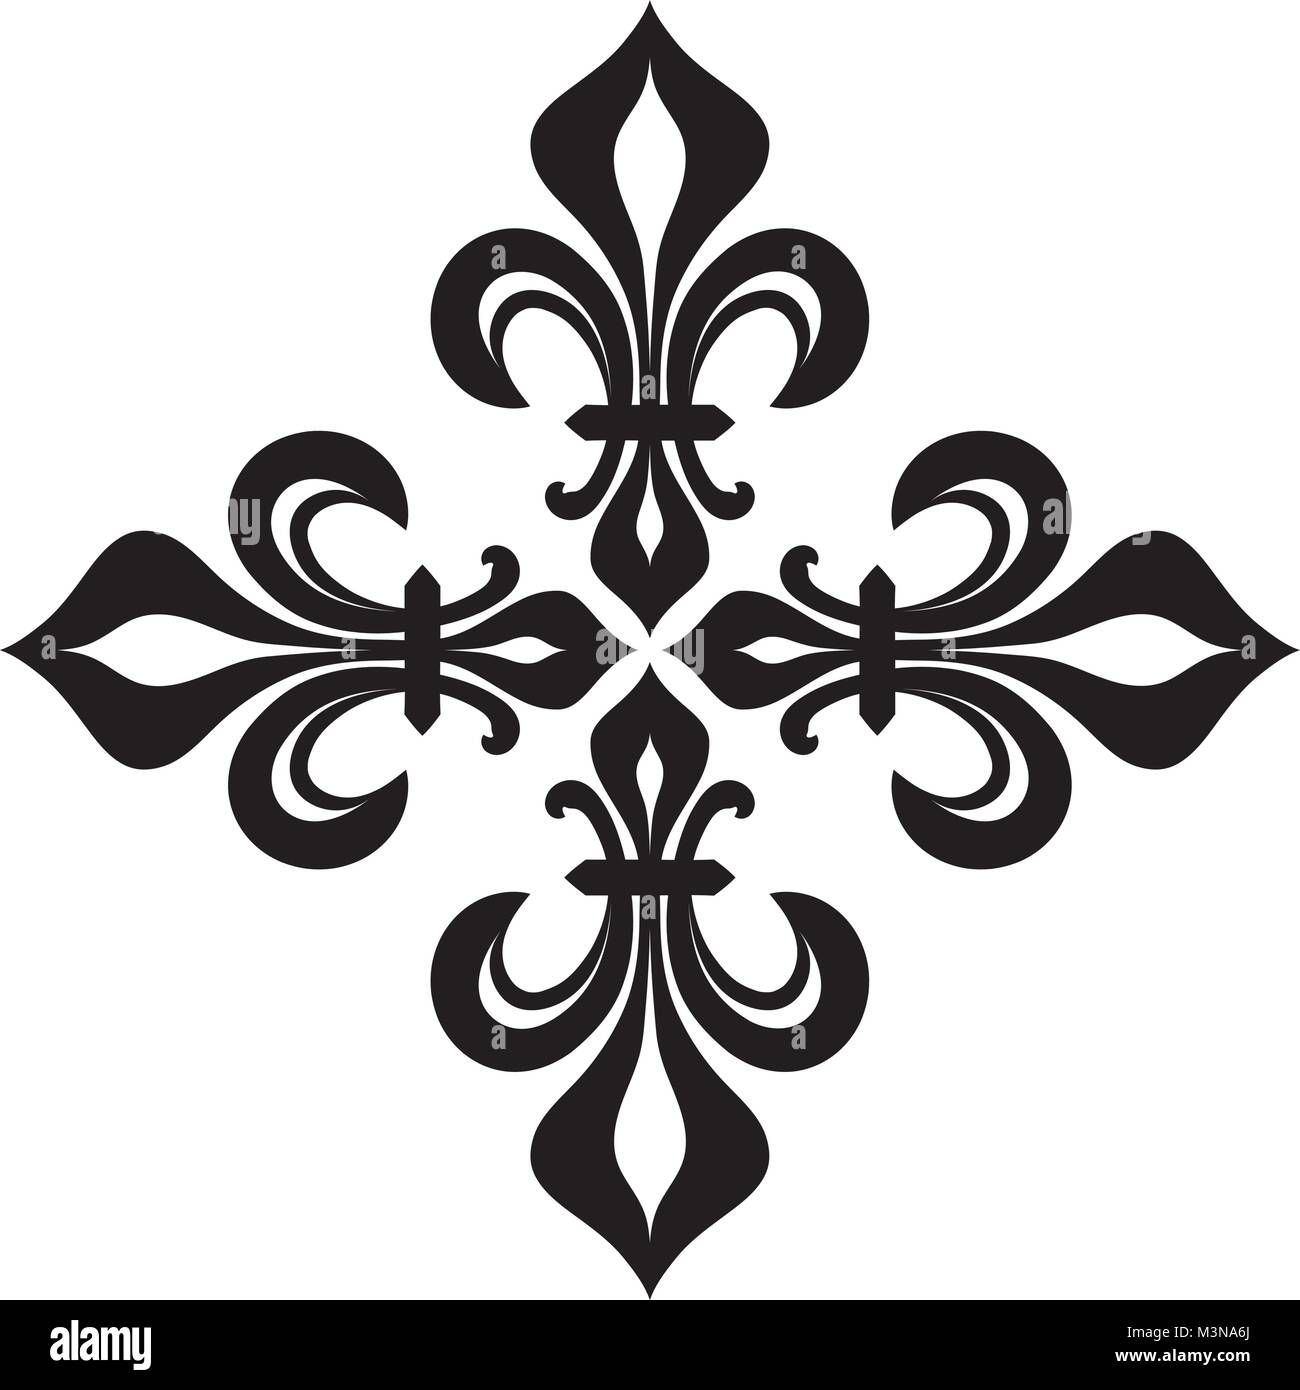 Croix Fleurdelisée (Cross of Lilies), Royal heraldic cross. Stock Vector